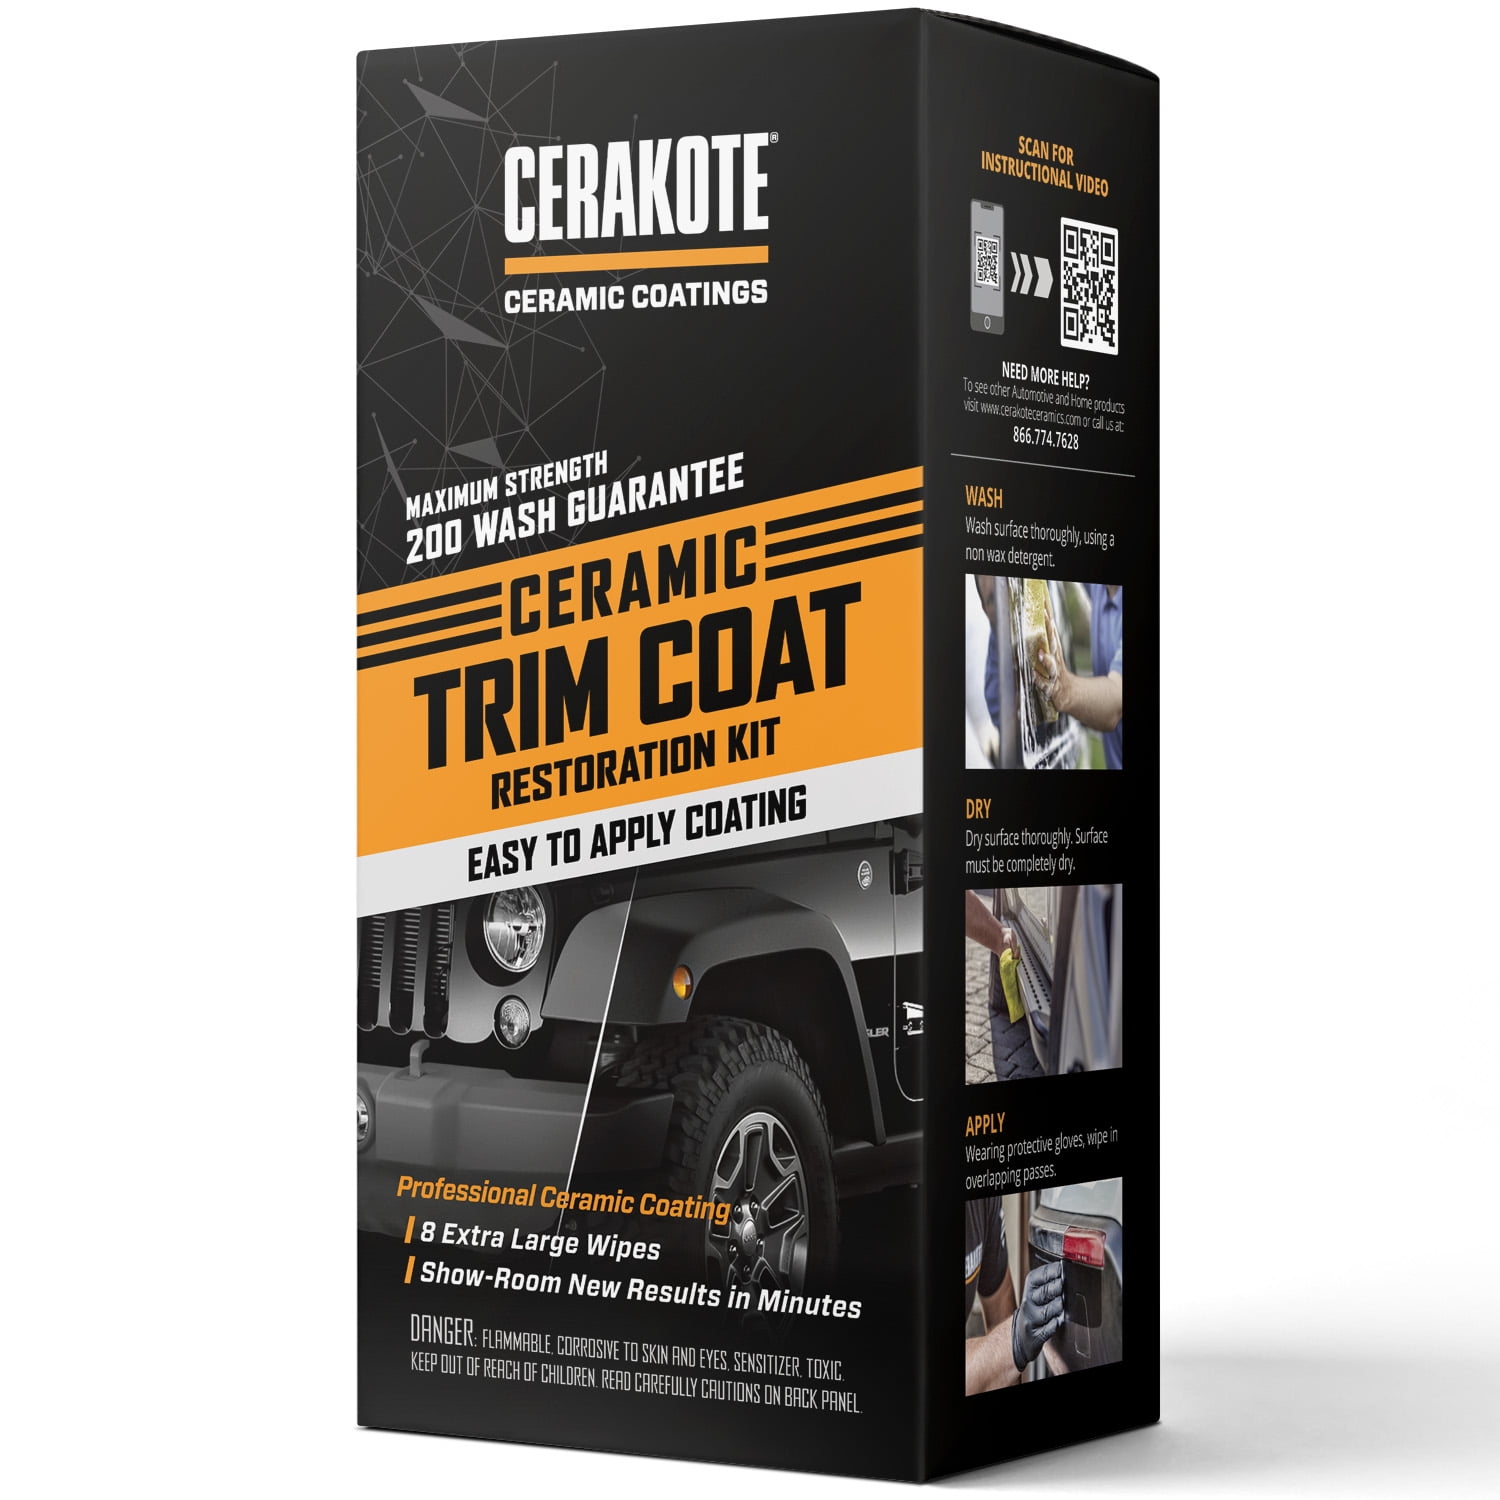 CERAKOTE Ceramic Trim Coat, Plastic Trim Restorer - Lasts 200 Washes